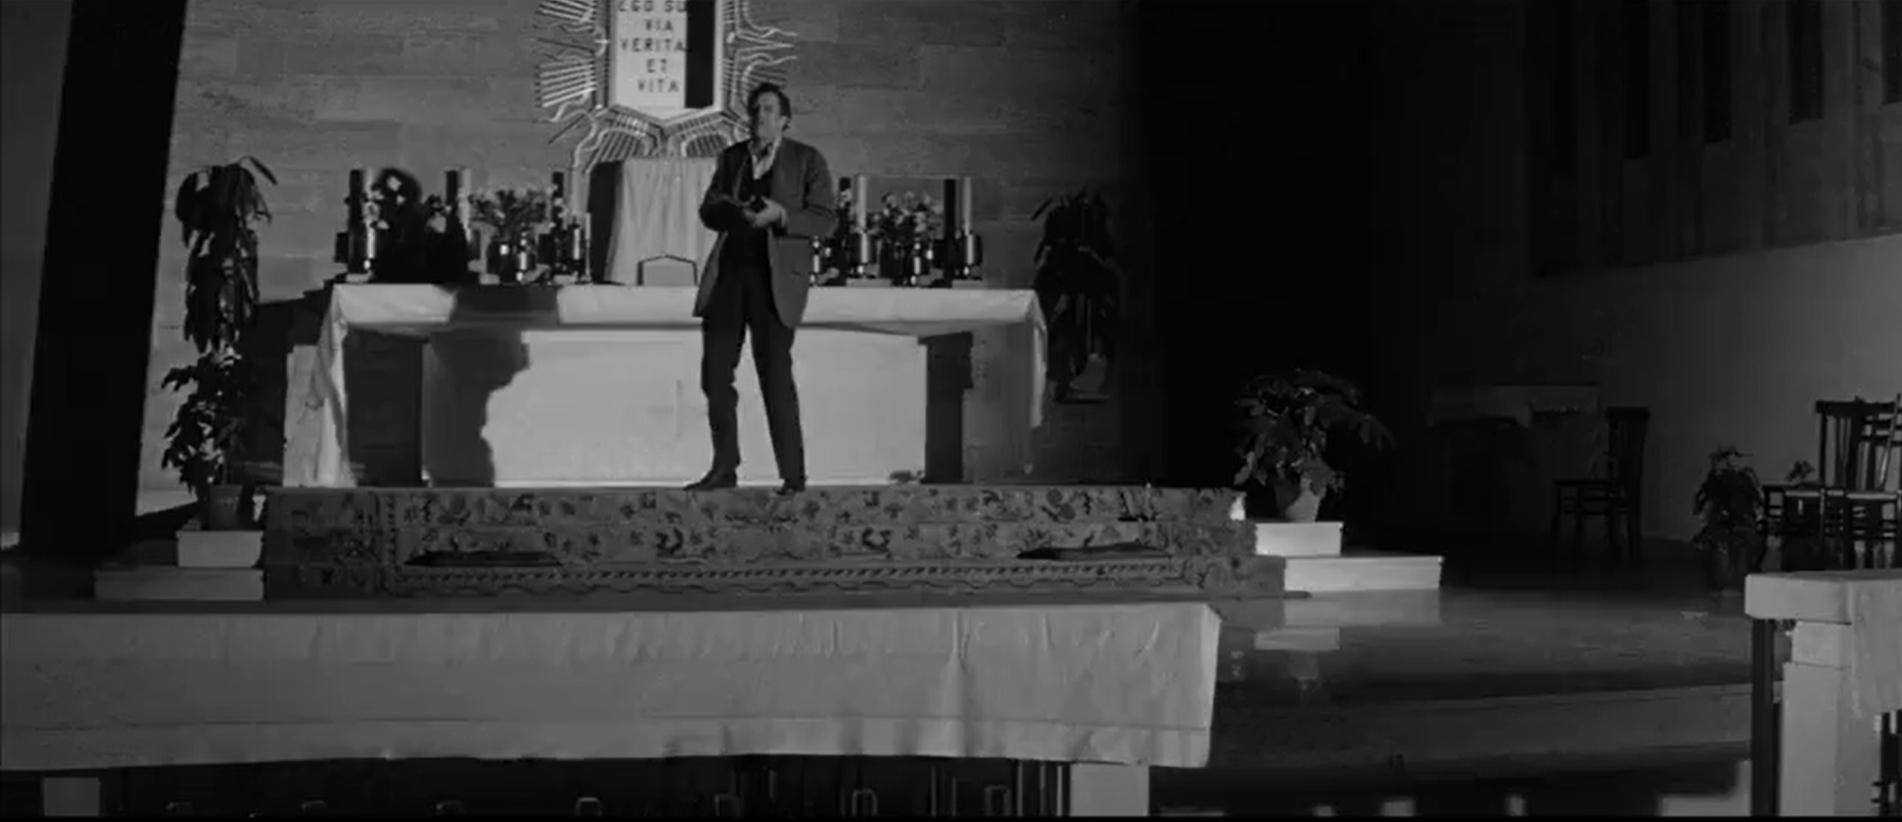 kadr z filmu OSTATNI CZŁOWIEK NA ZIEMI |The Last Man on Earth, 1964, reż. Ubaldo Ragona / Sidney Salkow